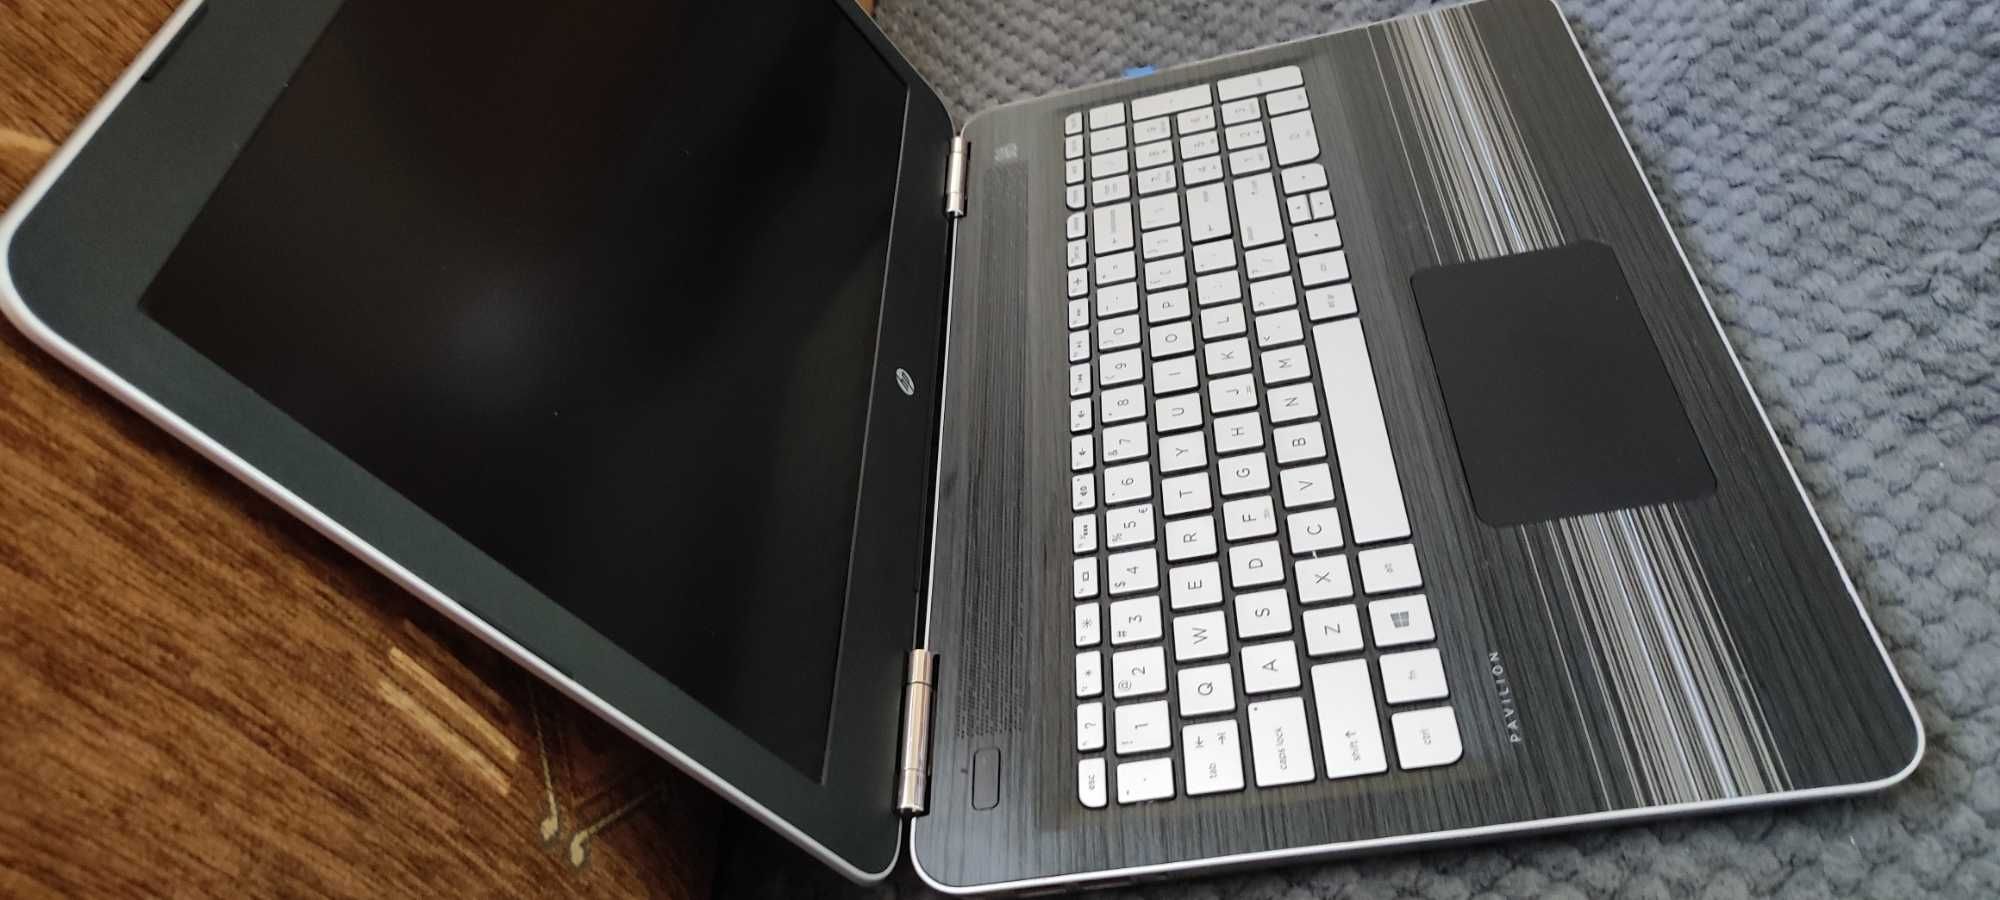 Laptop HP Pavilon i7-6700HQ, 256SSD+1tB, 16gb RAM, Nvidia GTX 960M